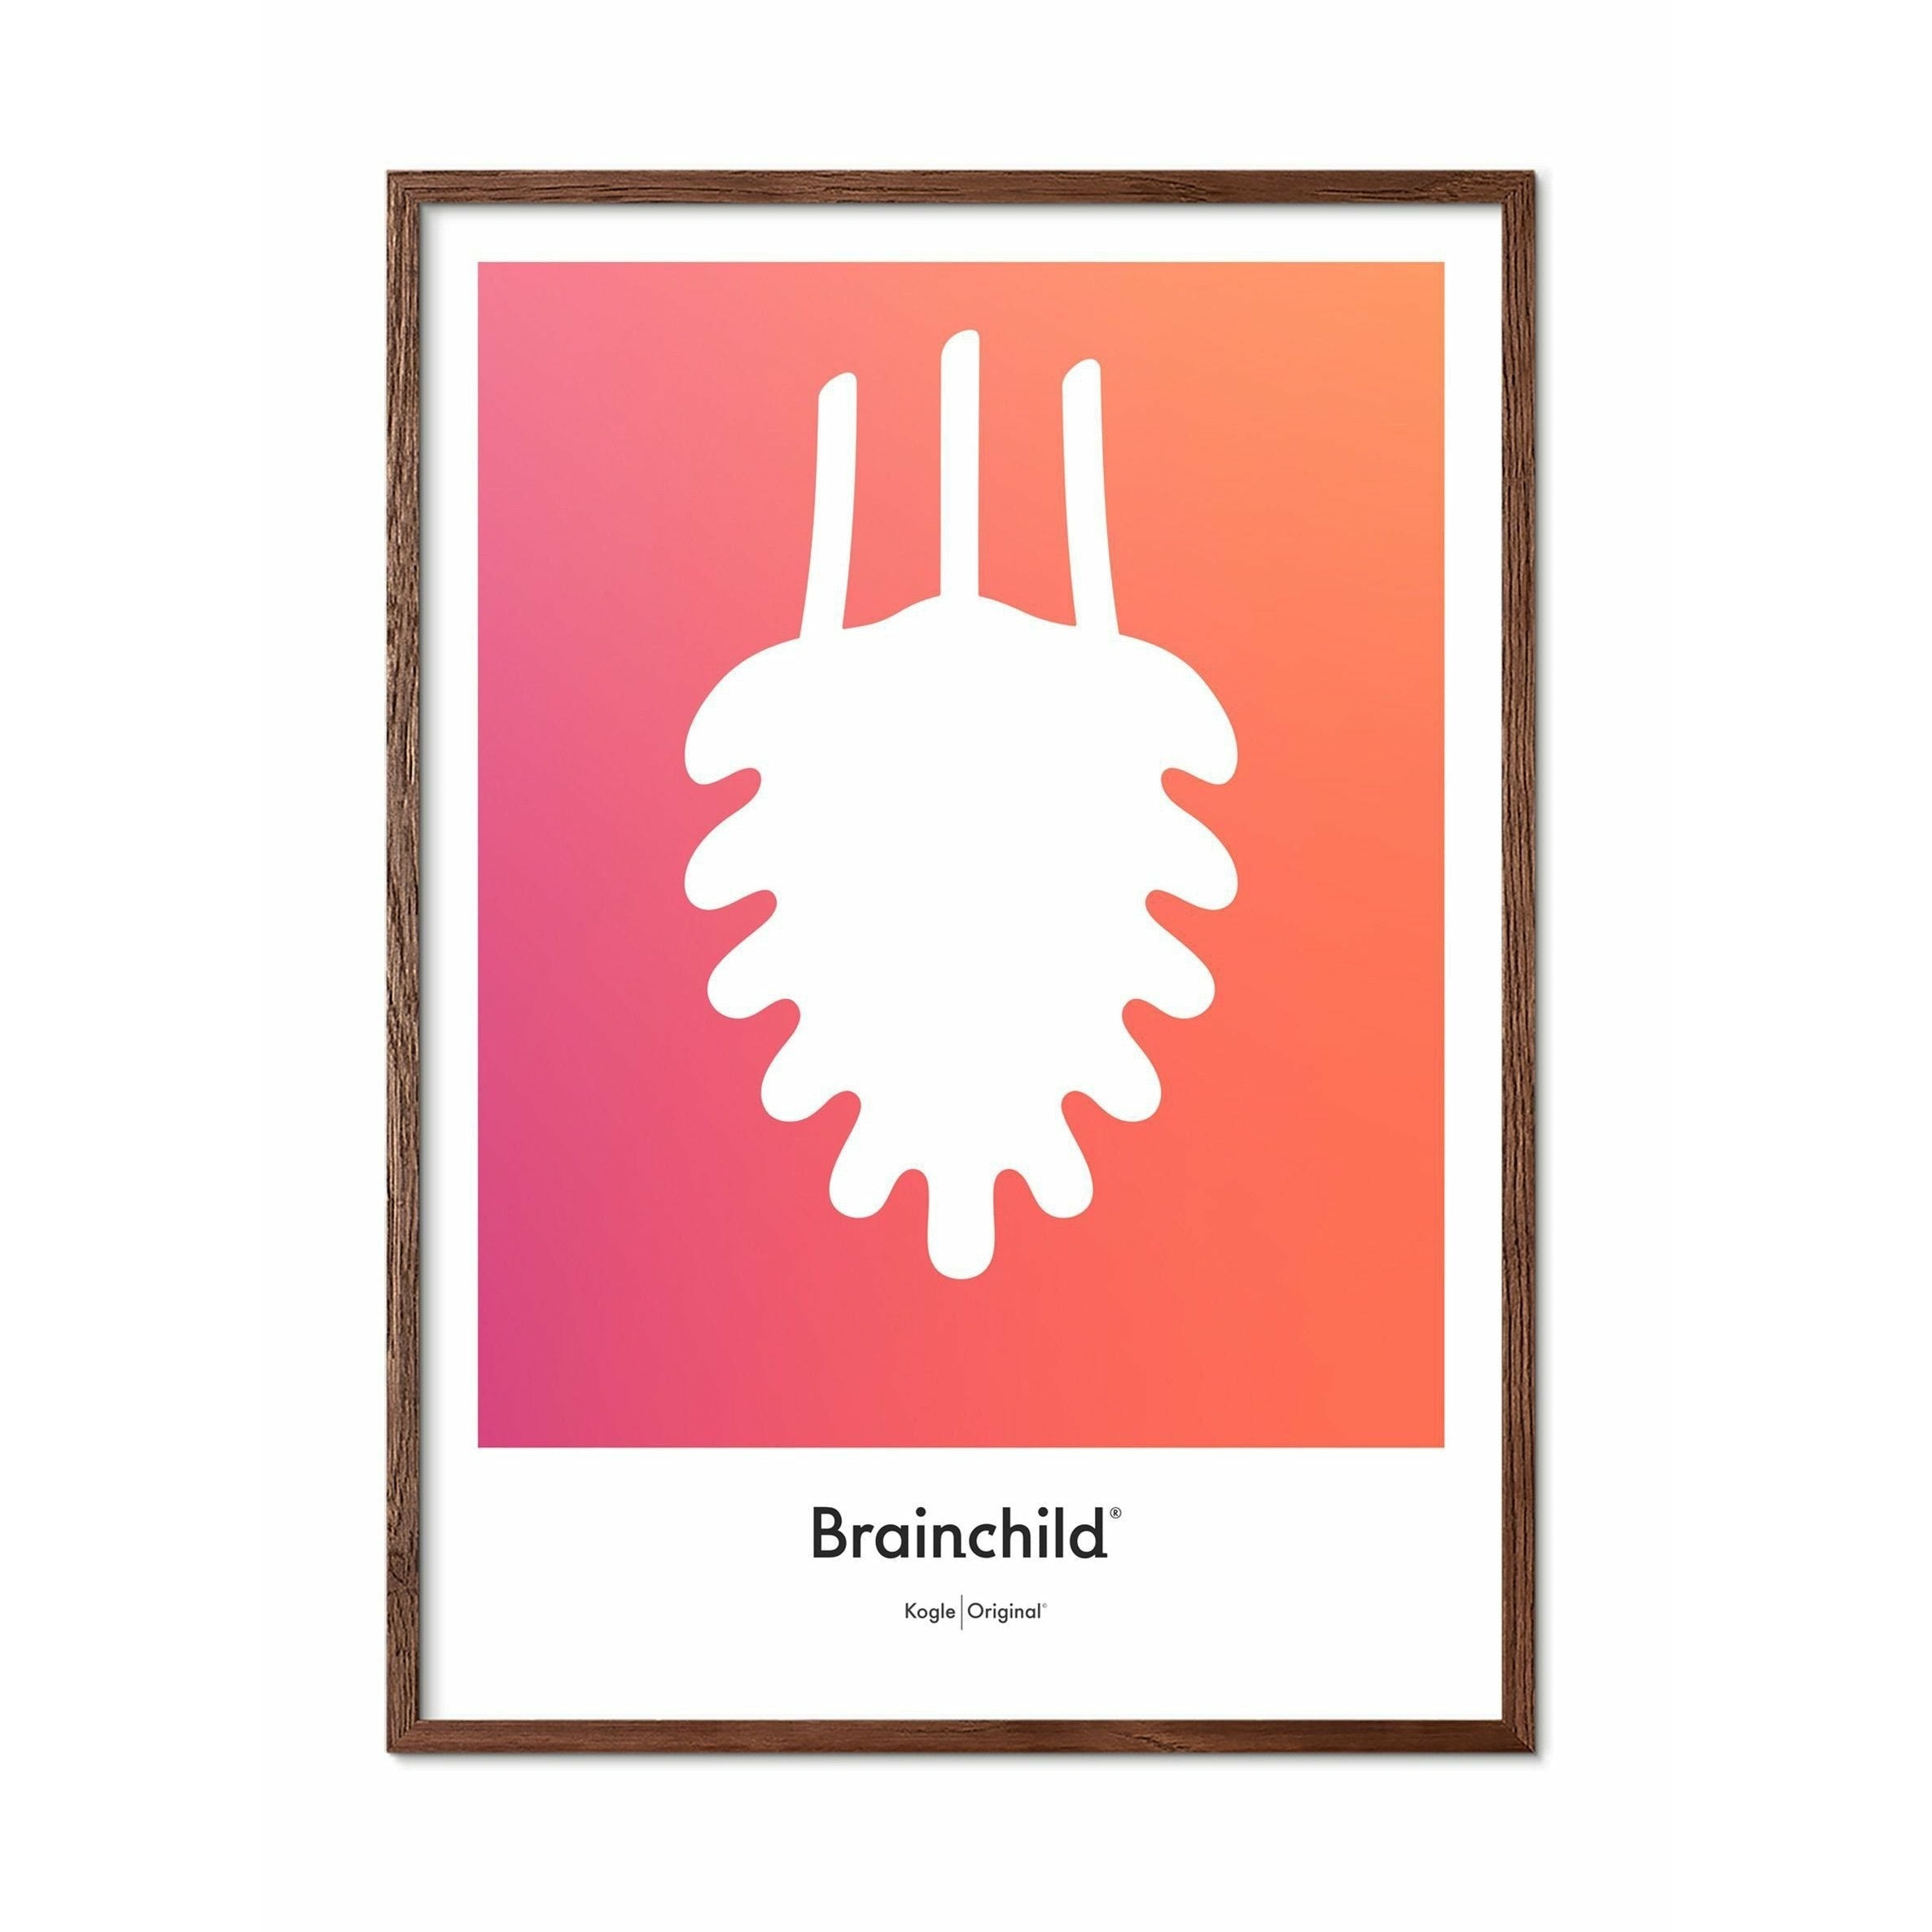 Brainchild Pine Cone Design Icon Poster, Dark Wood Frame A5, Orange